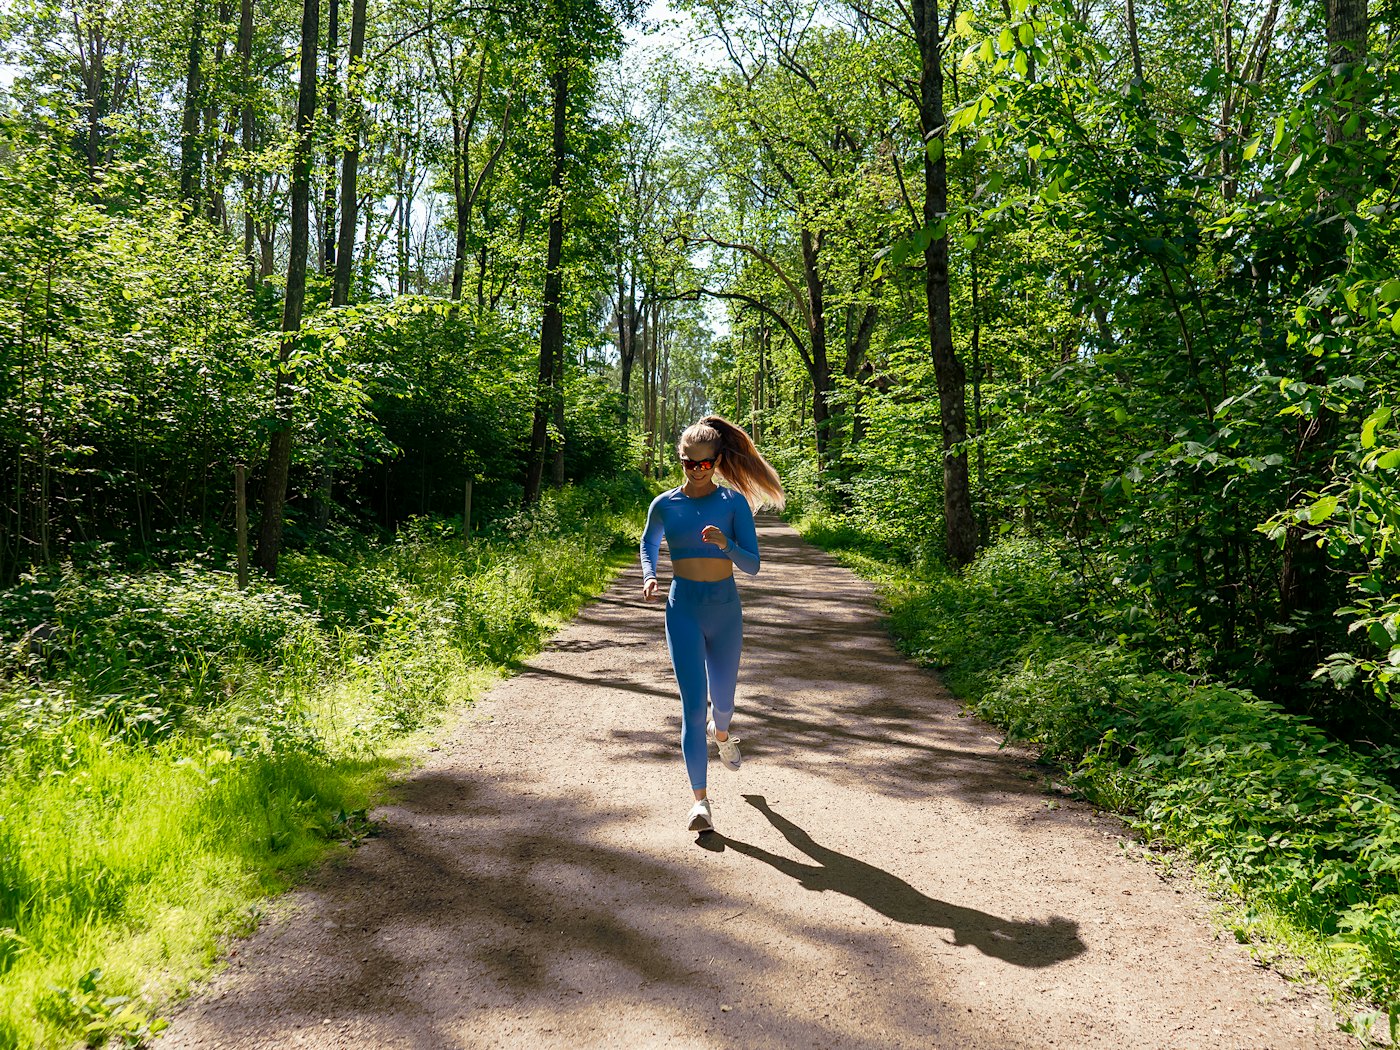 Dame i blått  jogger på en bred gruslagt sti i skogen mot kamera.